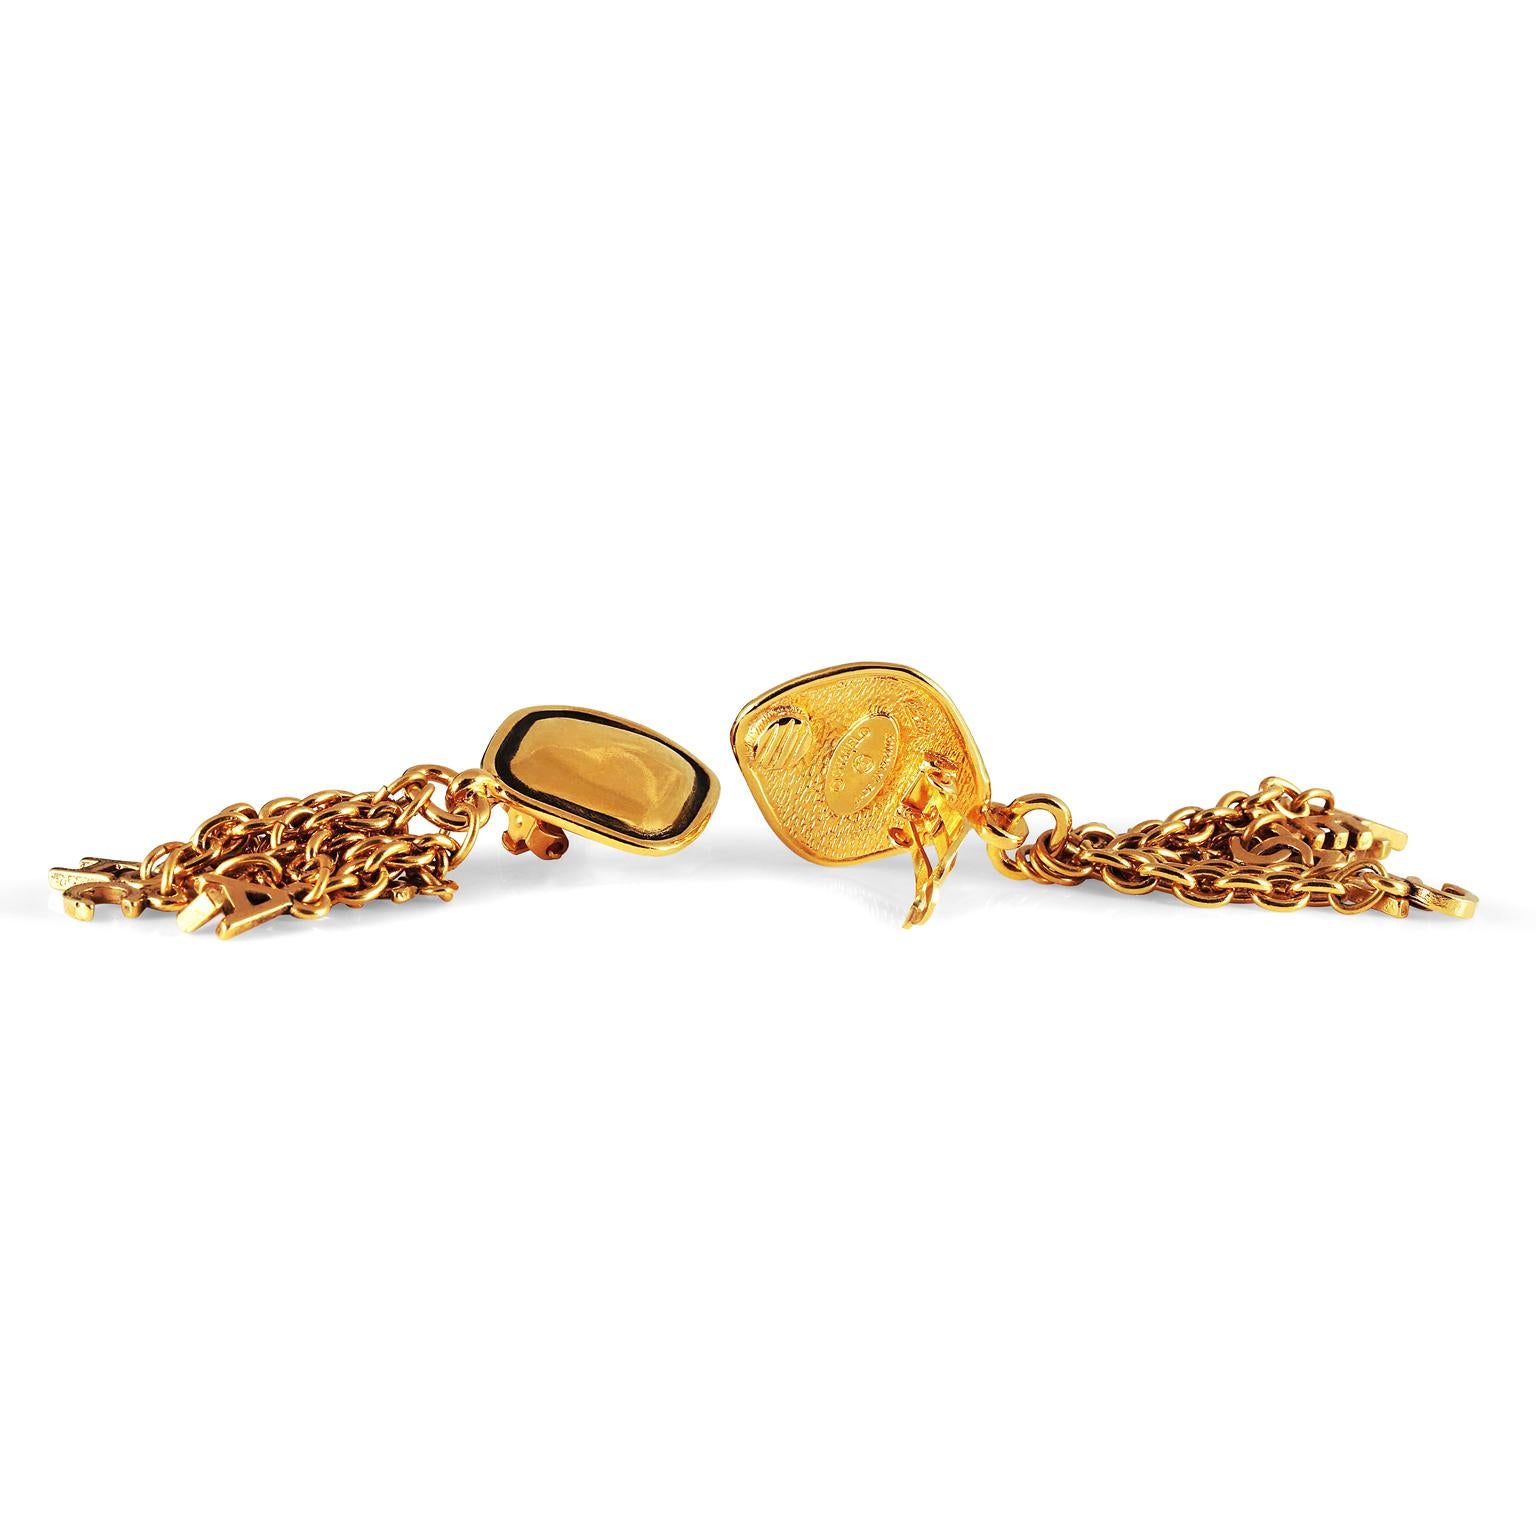 Diese authentischen Chanel Gold Letter Fringe Ohrringe sind in ausgezeichnetem Zustand aus den frühen 1980er Jahren. Goldfarbene diamantförmige Clip-Ohrringe haben tropfende Ketten.  An jeder Kette baumeln Buchstabenanhänger von C H A N E L, die für